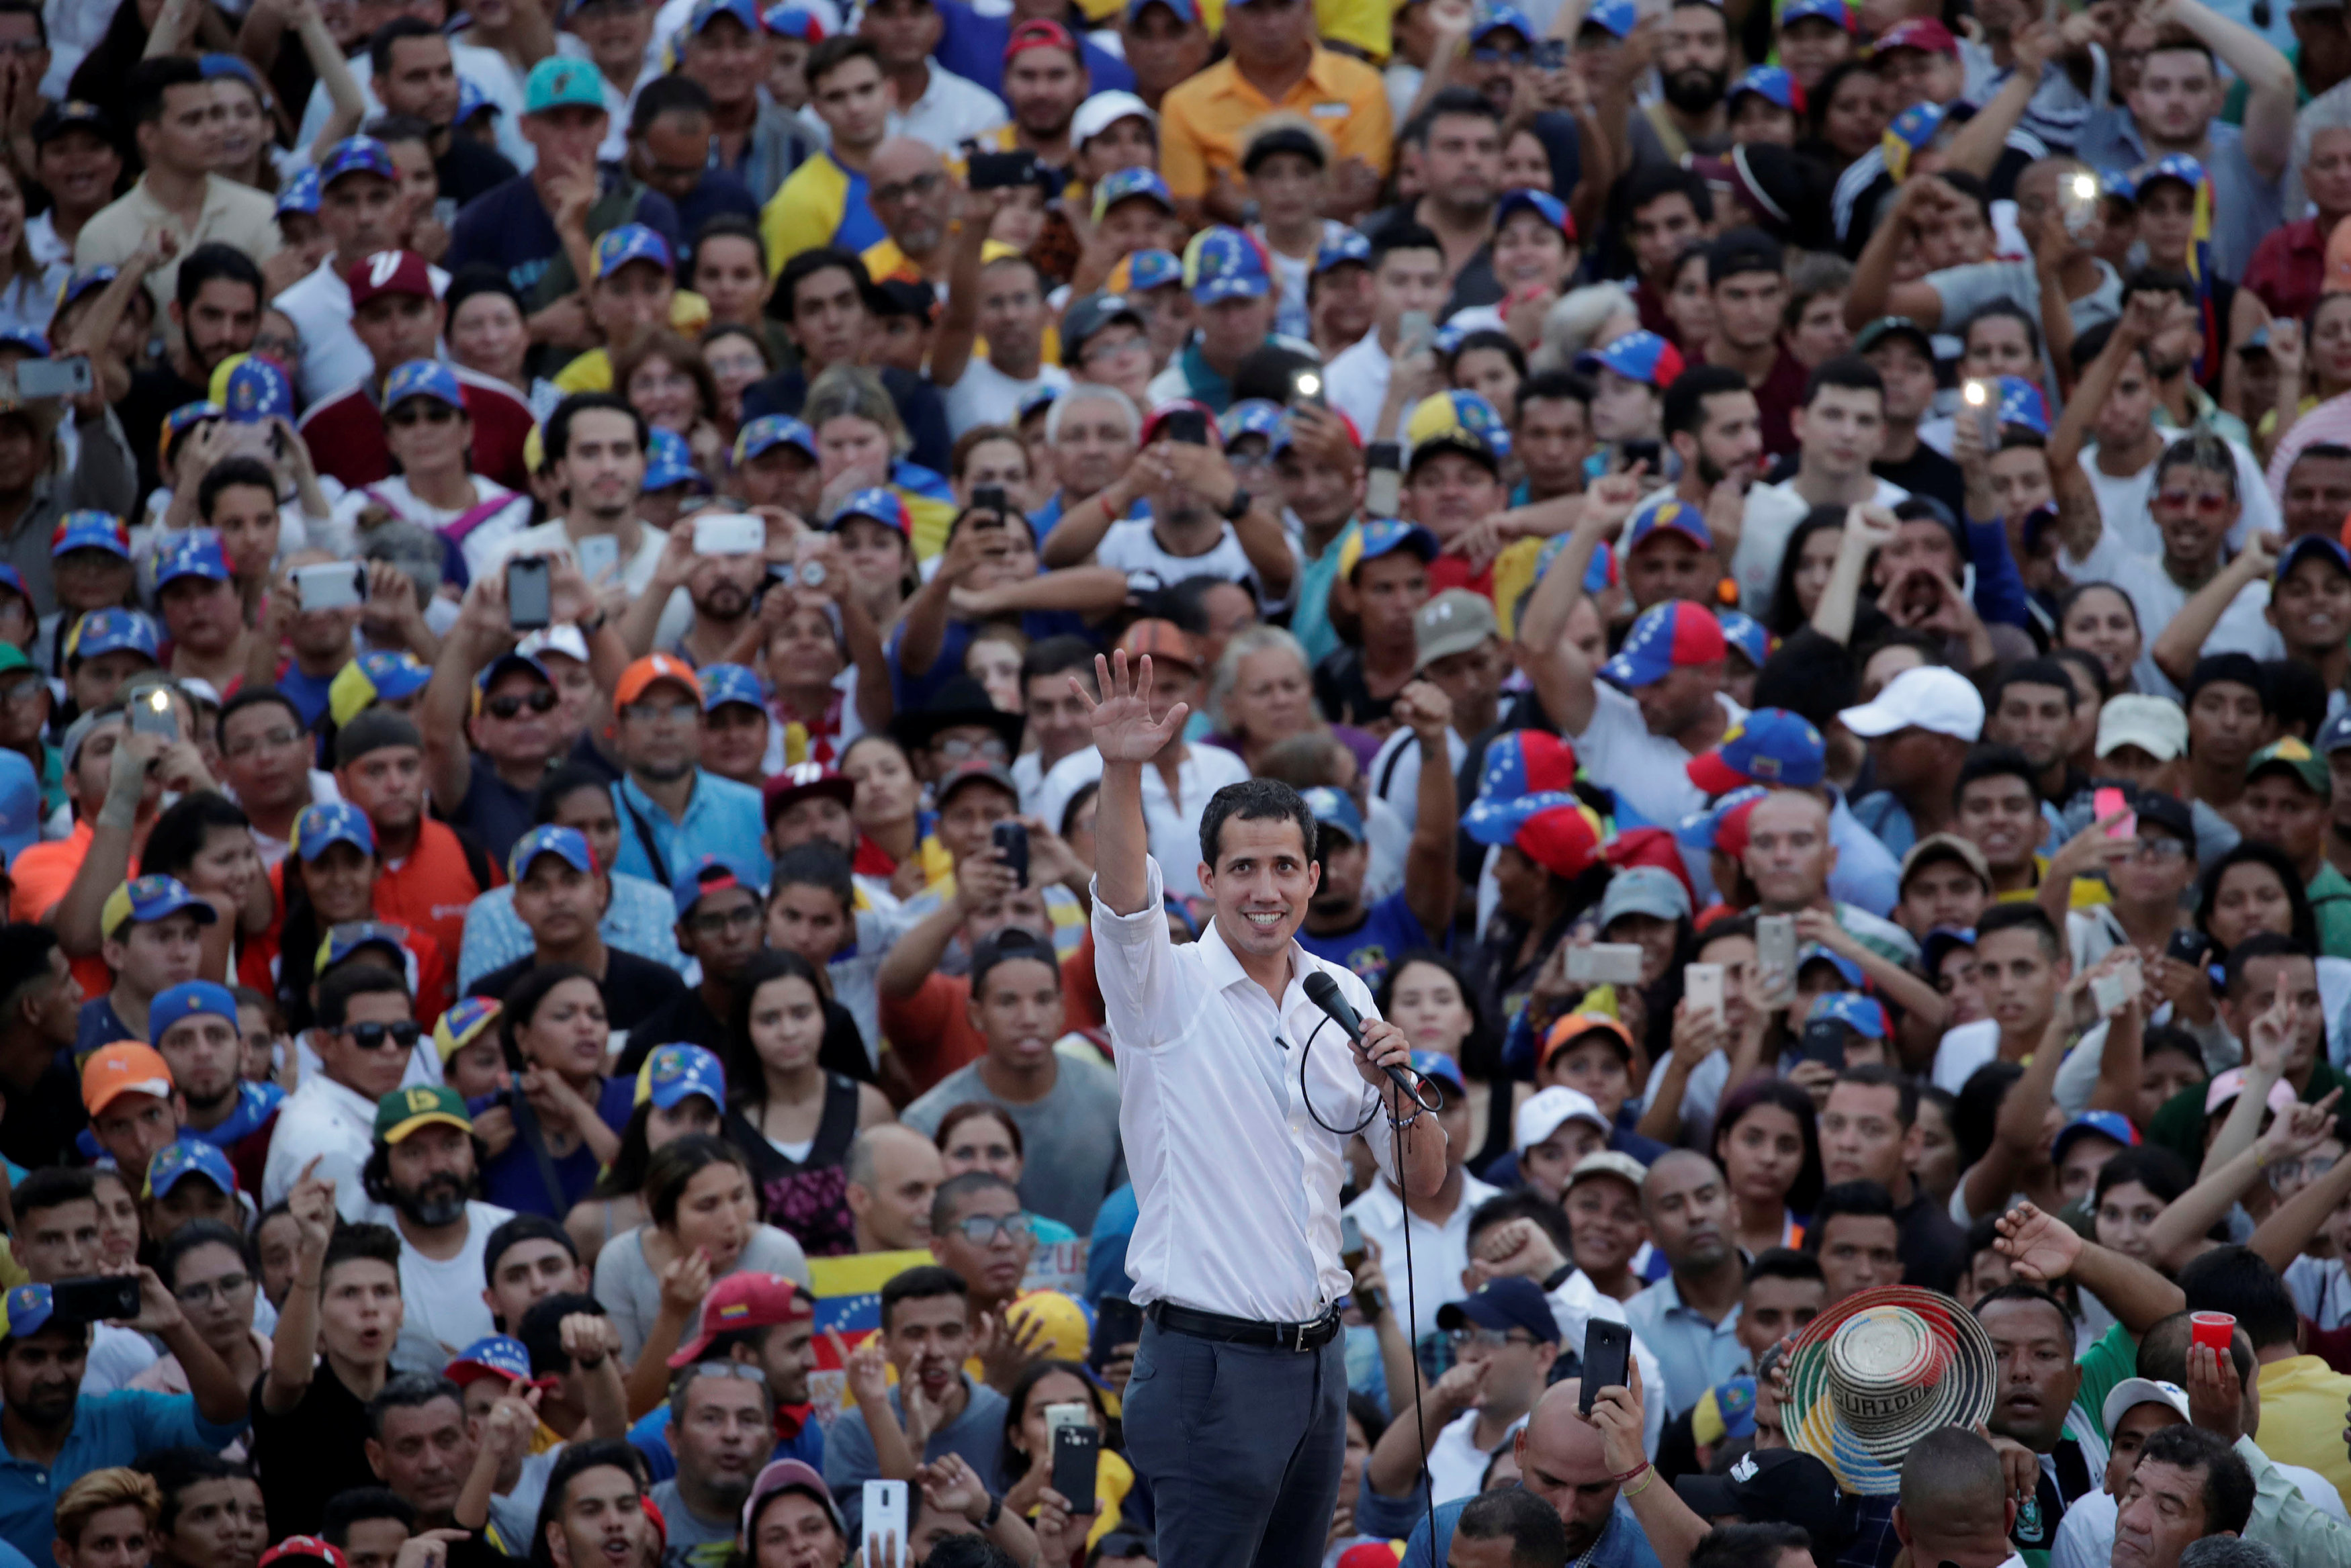 Marea popular respaldó a Guaidó en el Zulia, víctima de severos apagones rojos (FOTOS)